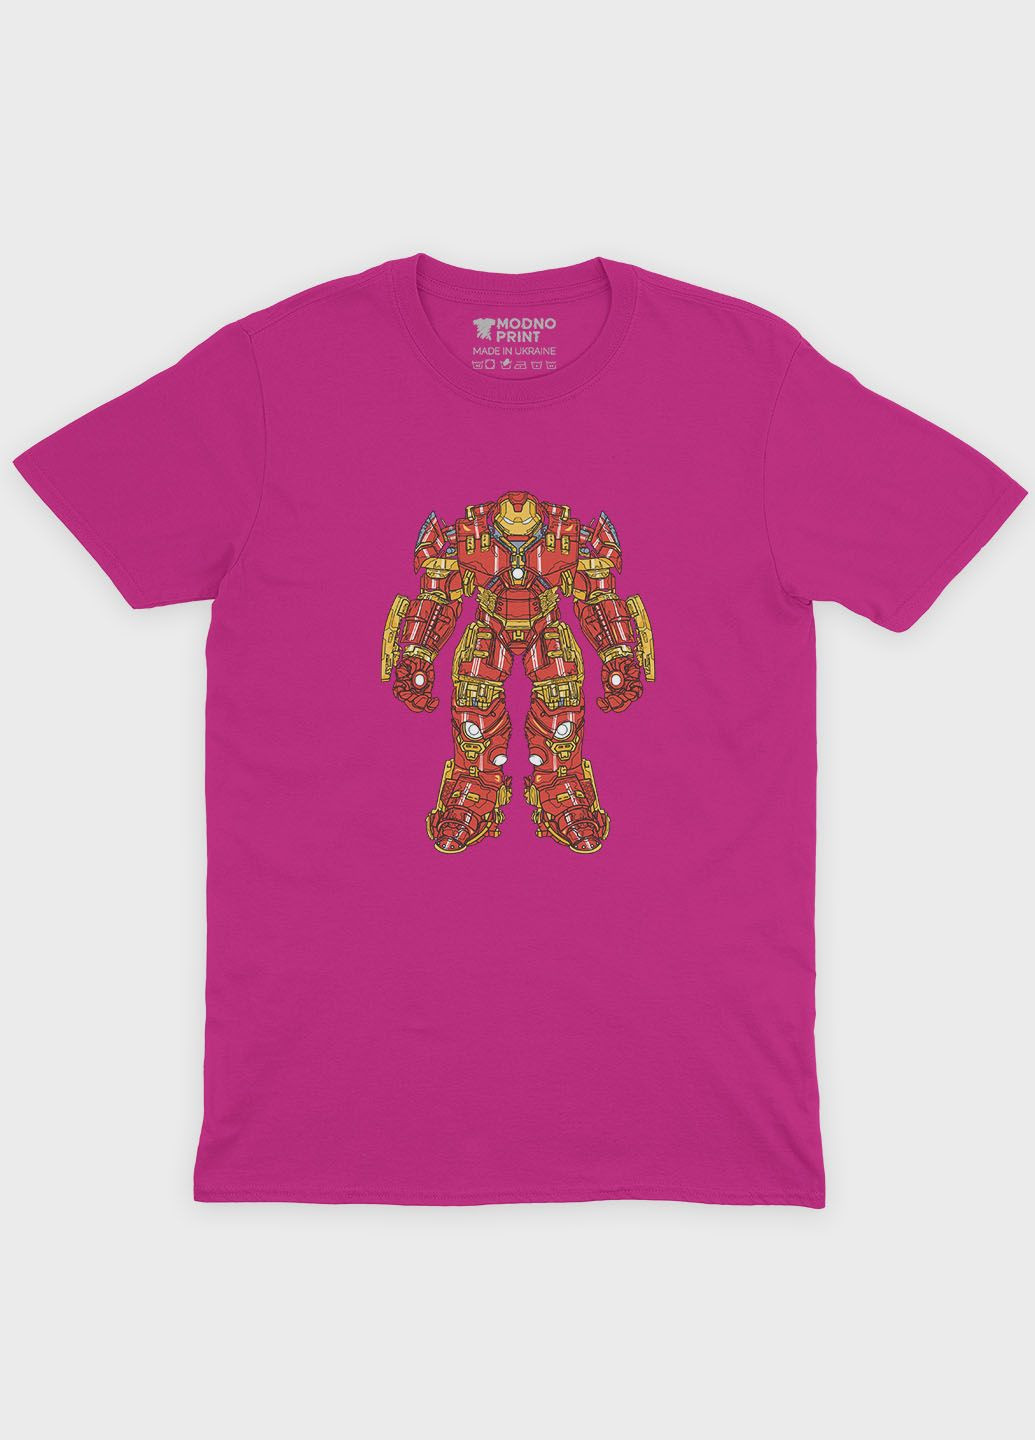 Рожева демісезонна футболка для хлопчика з принтом супергероя - залізна людина (ts001-1-fuxj-006-016-012-b) Modno